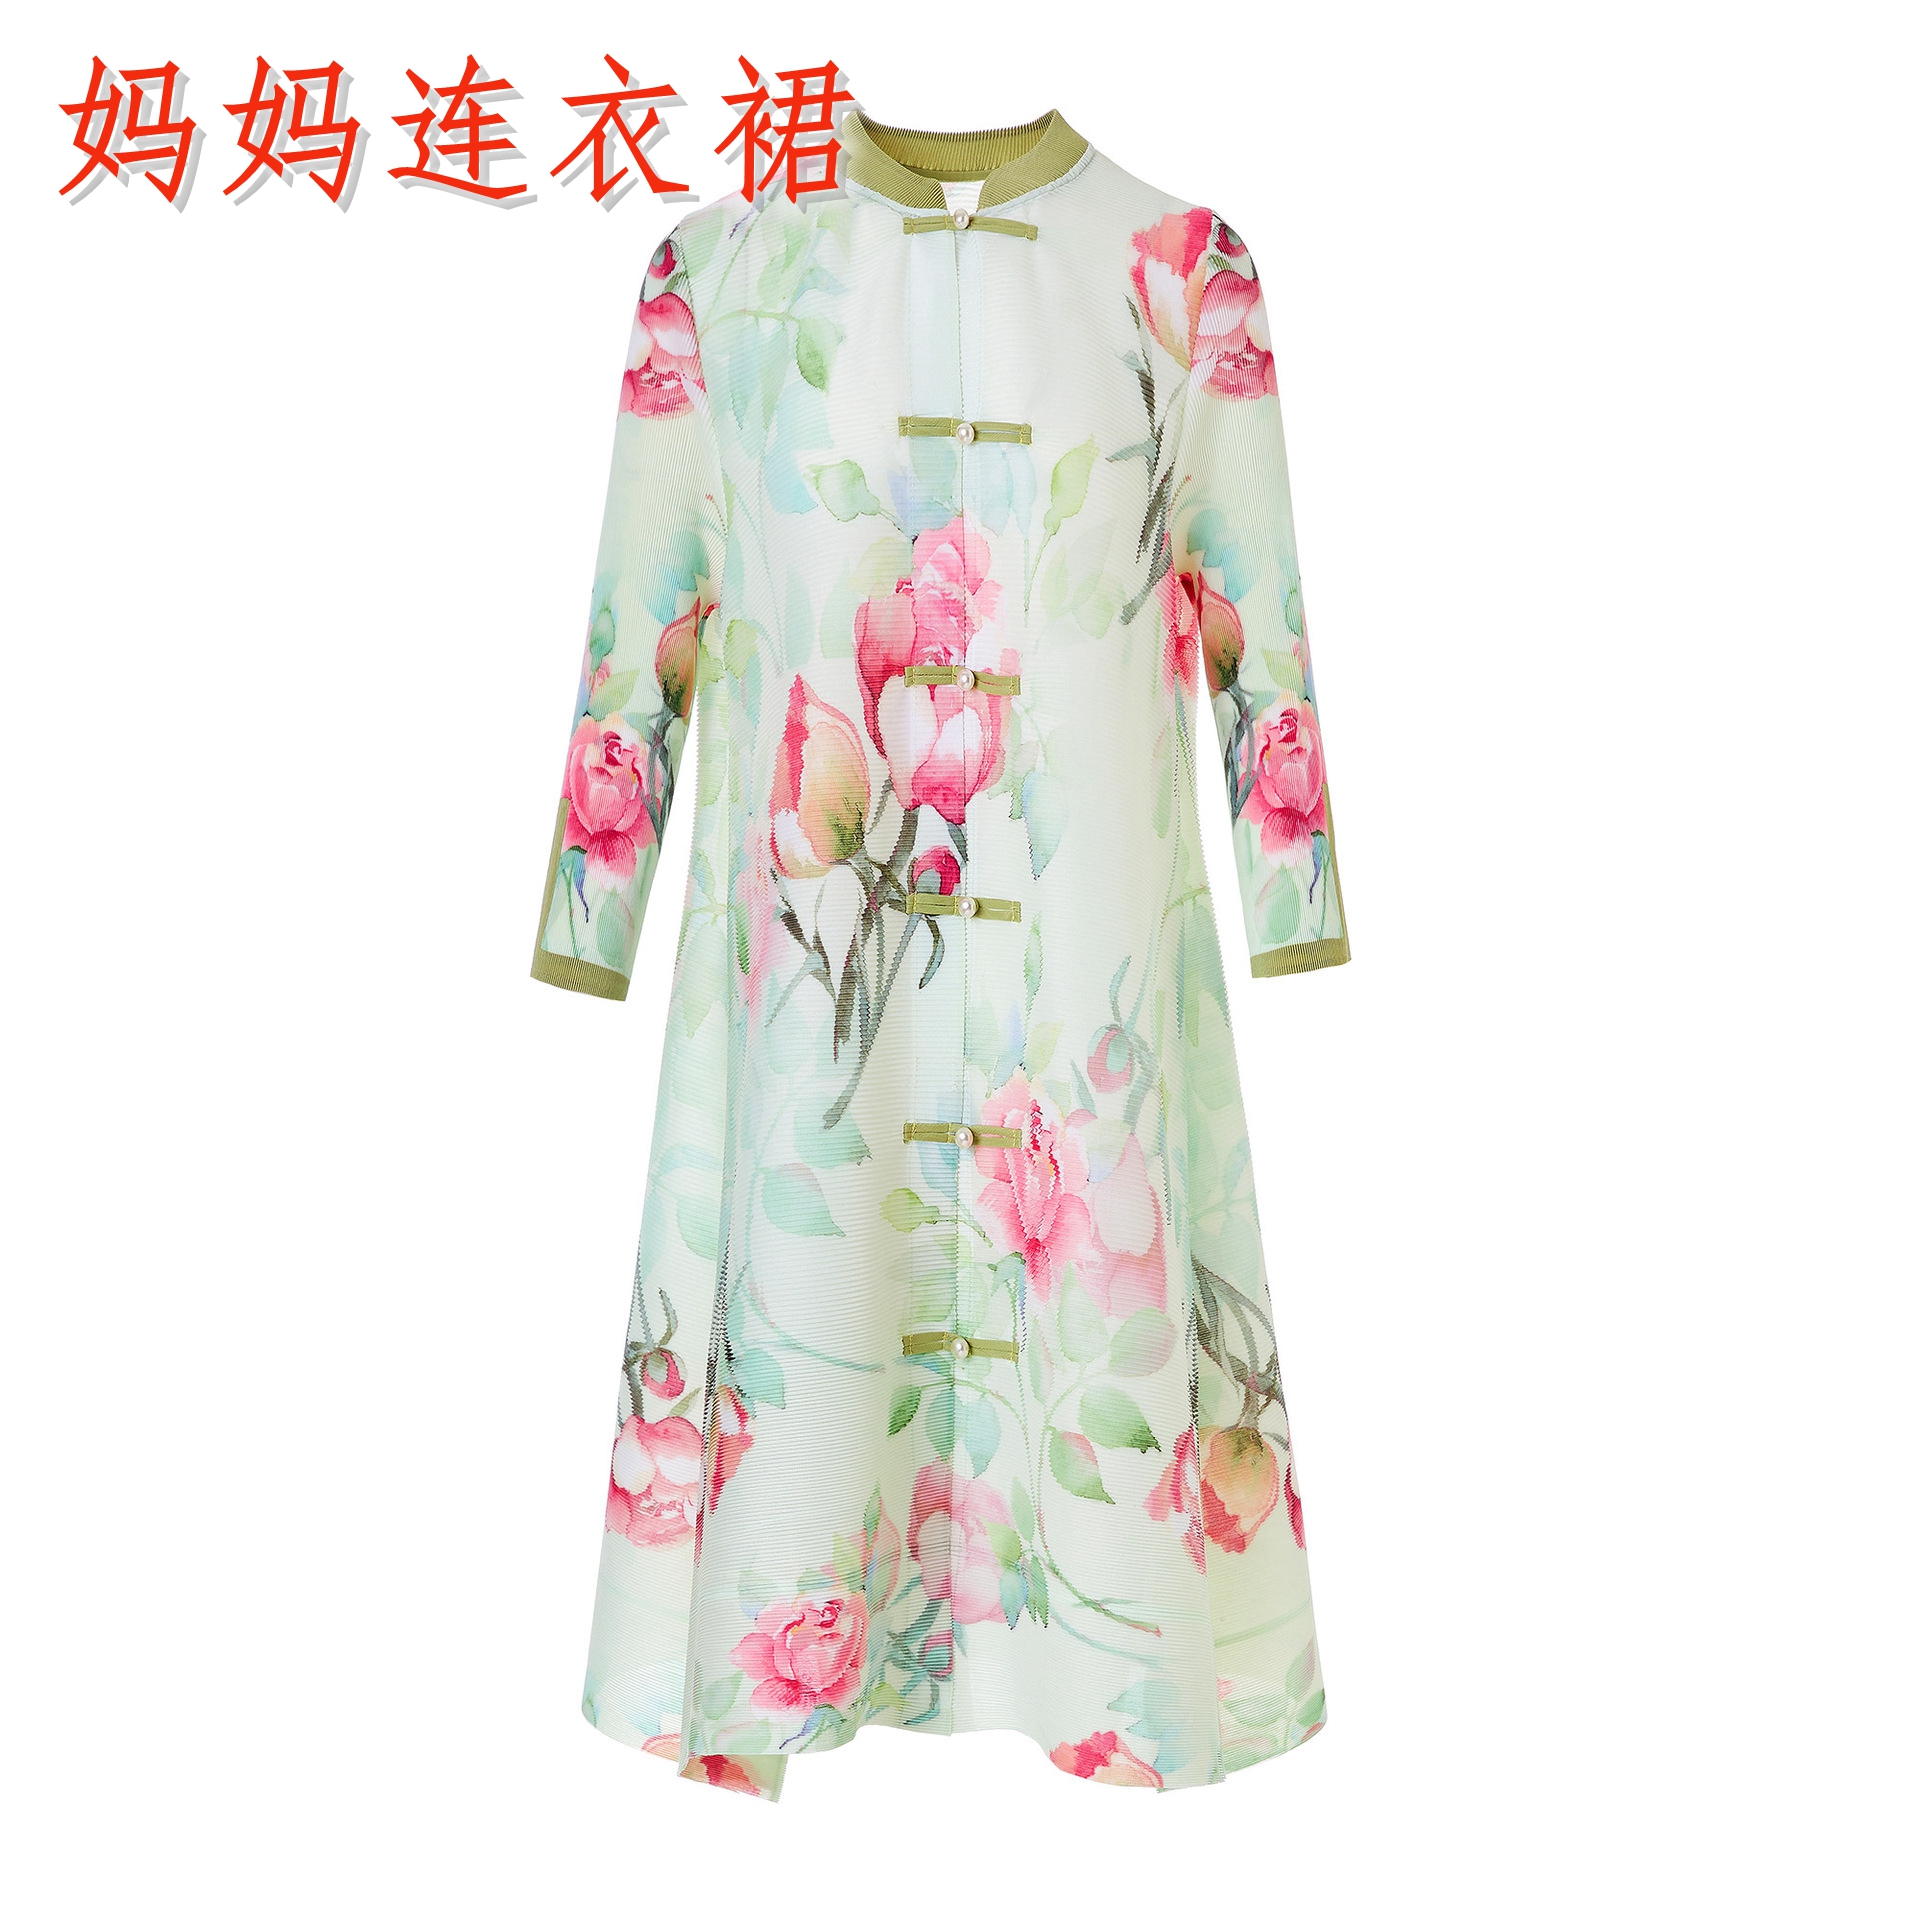 新中式女装中国风高品质夏装50多岁妈妈连衣裙长袖韩版洋气中长款